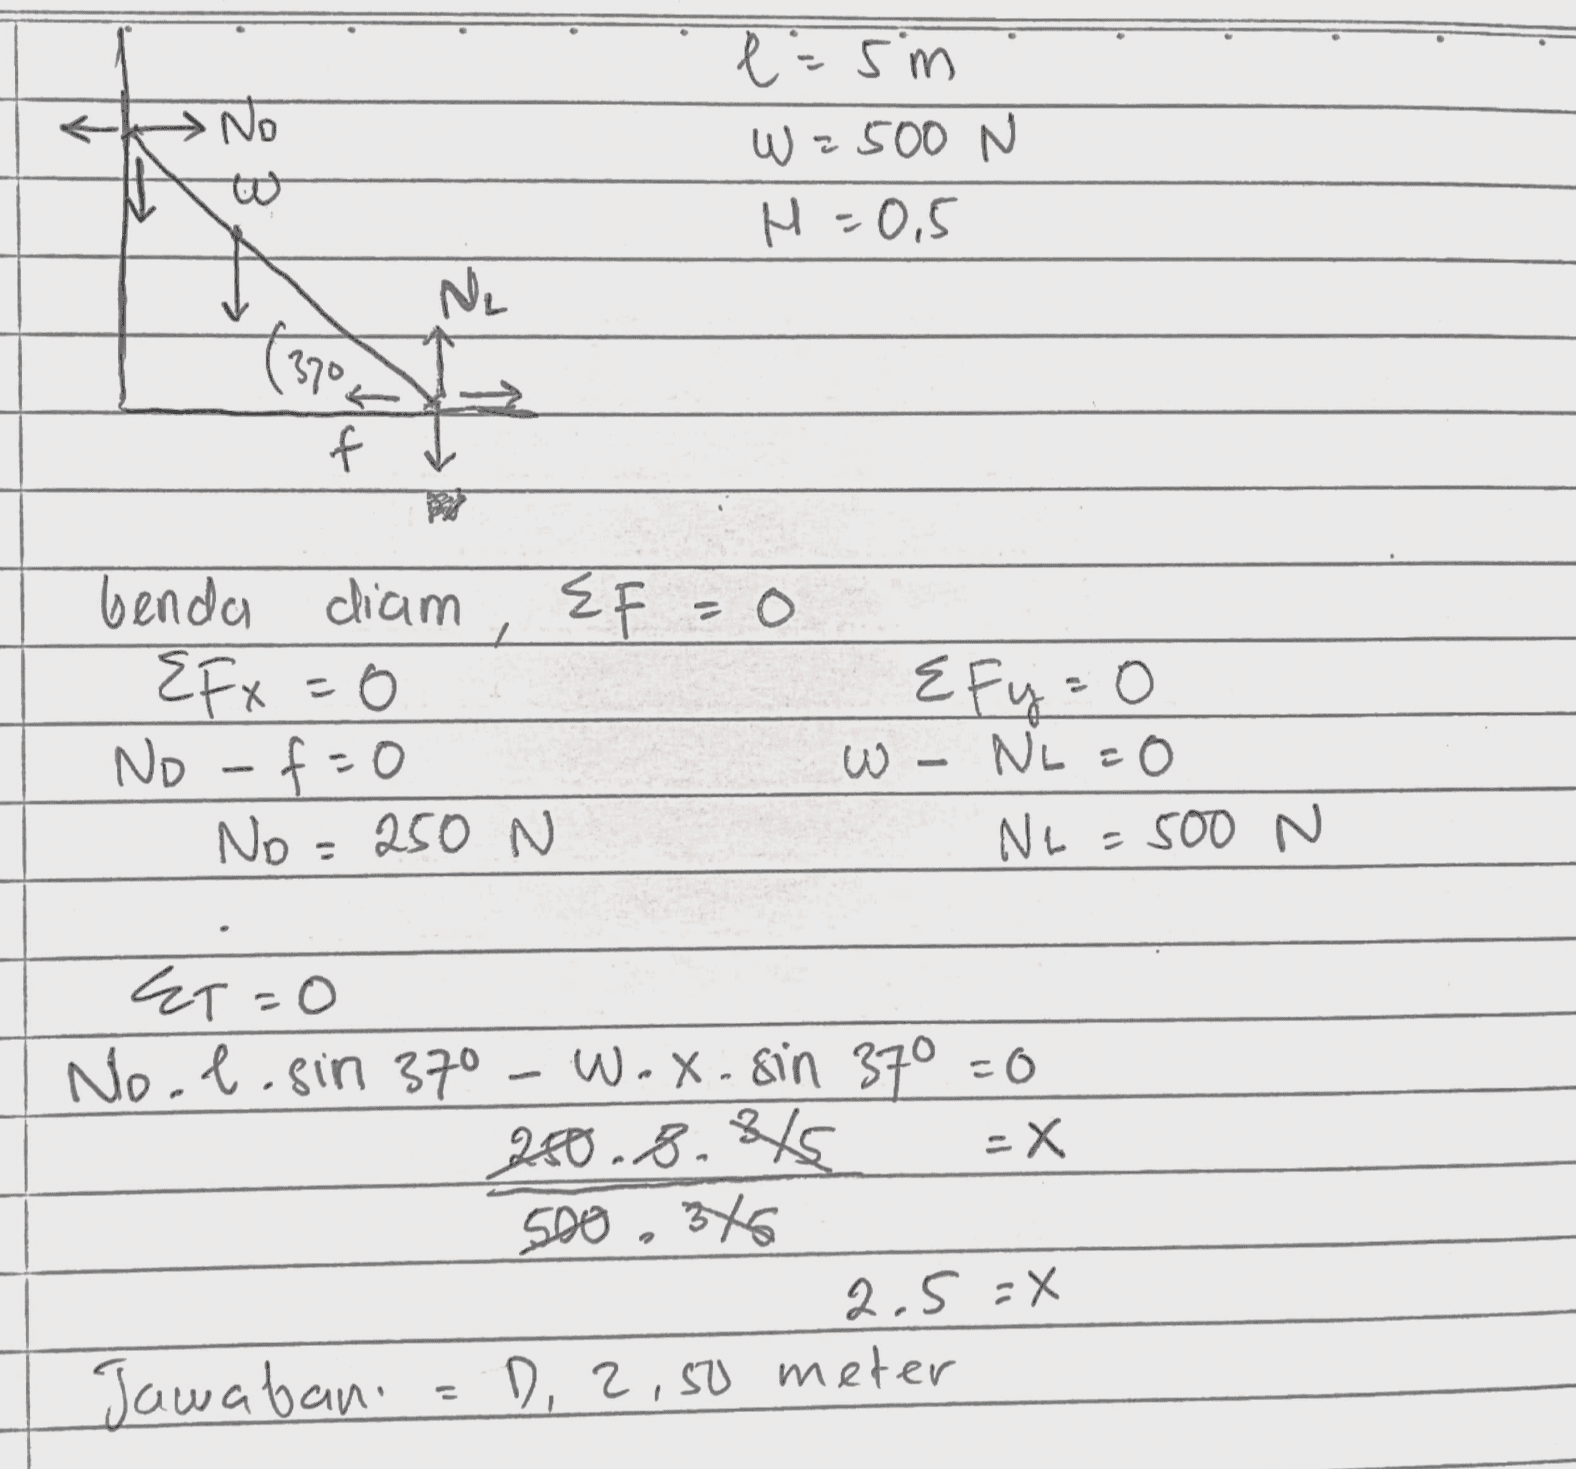 •No l=sm W = 2500 N H = 0,5 Ne 1370 f EF=0 benda diam Efx=0 No -f=0 No=250 N Efy=0 W - NL=0 Ne=500 N - ET=0 No.l.sin 370 Wox. sin 37° =0 280.8.845 -X 500, 345 2.5 =X Jawabani D, 2,50 meter 